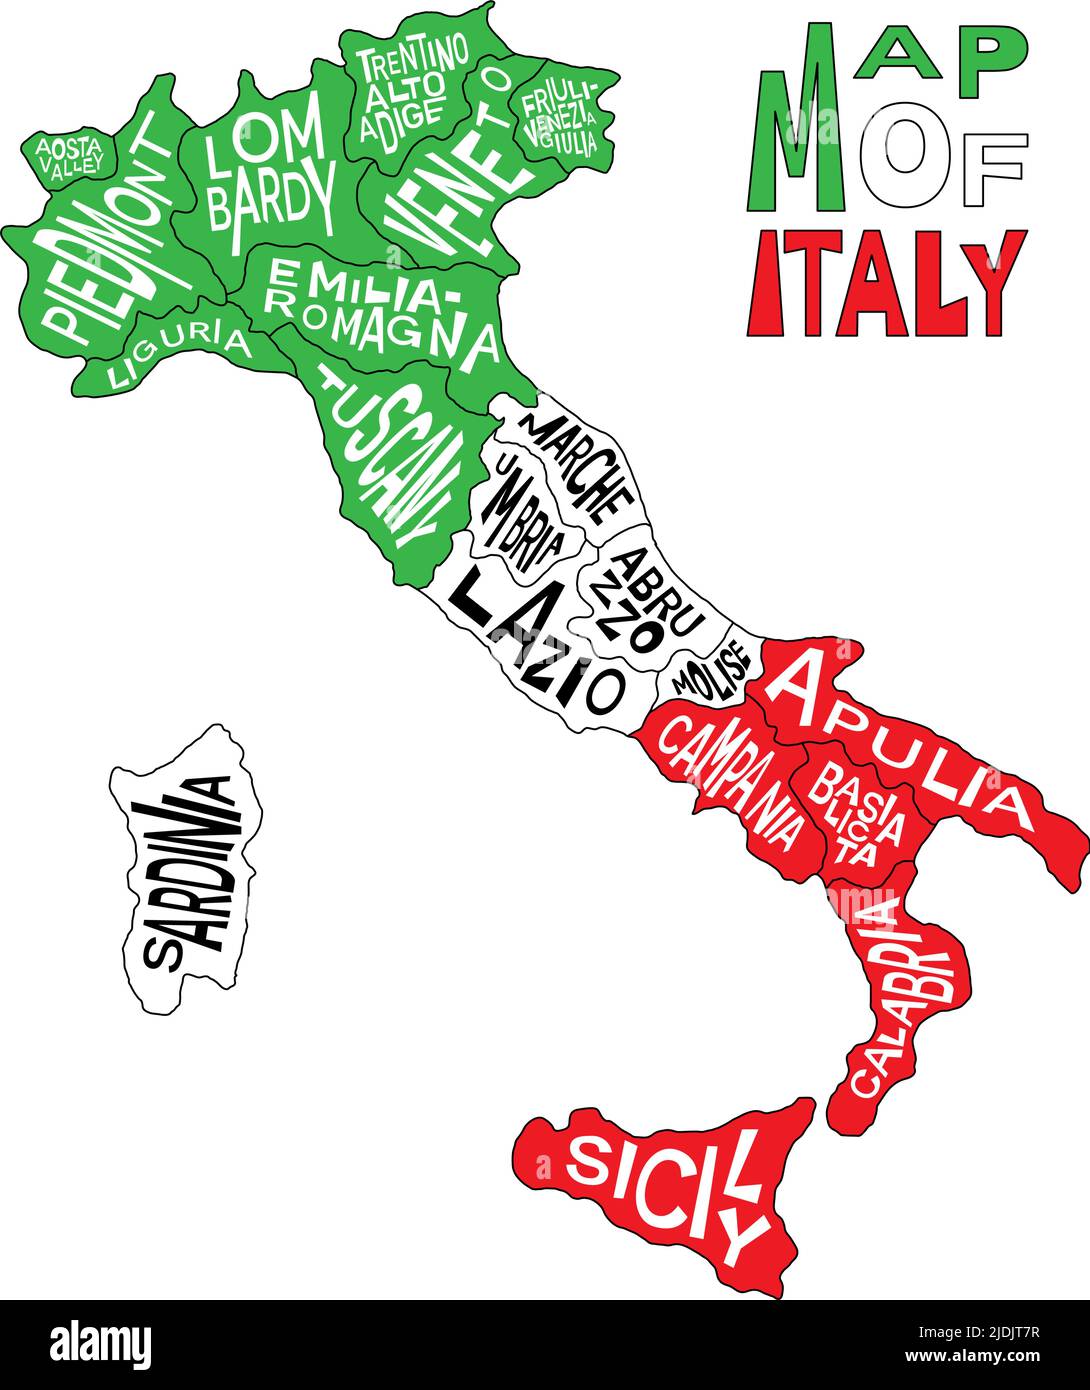 Italienische Karte mit Namen der Verwaltungsprovinzen - Abruzzen, Aostatal, Apulien, Basilikata, Kalabrien und mehr. Landkarte von Italien mit Infografik zur Region Stock Vektor